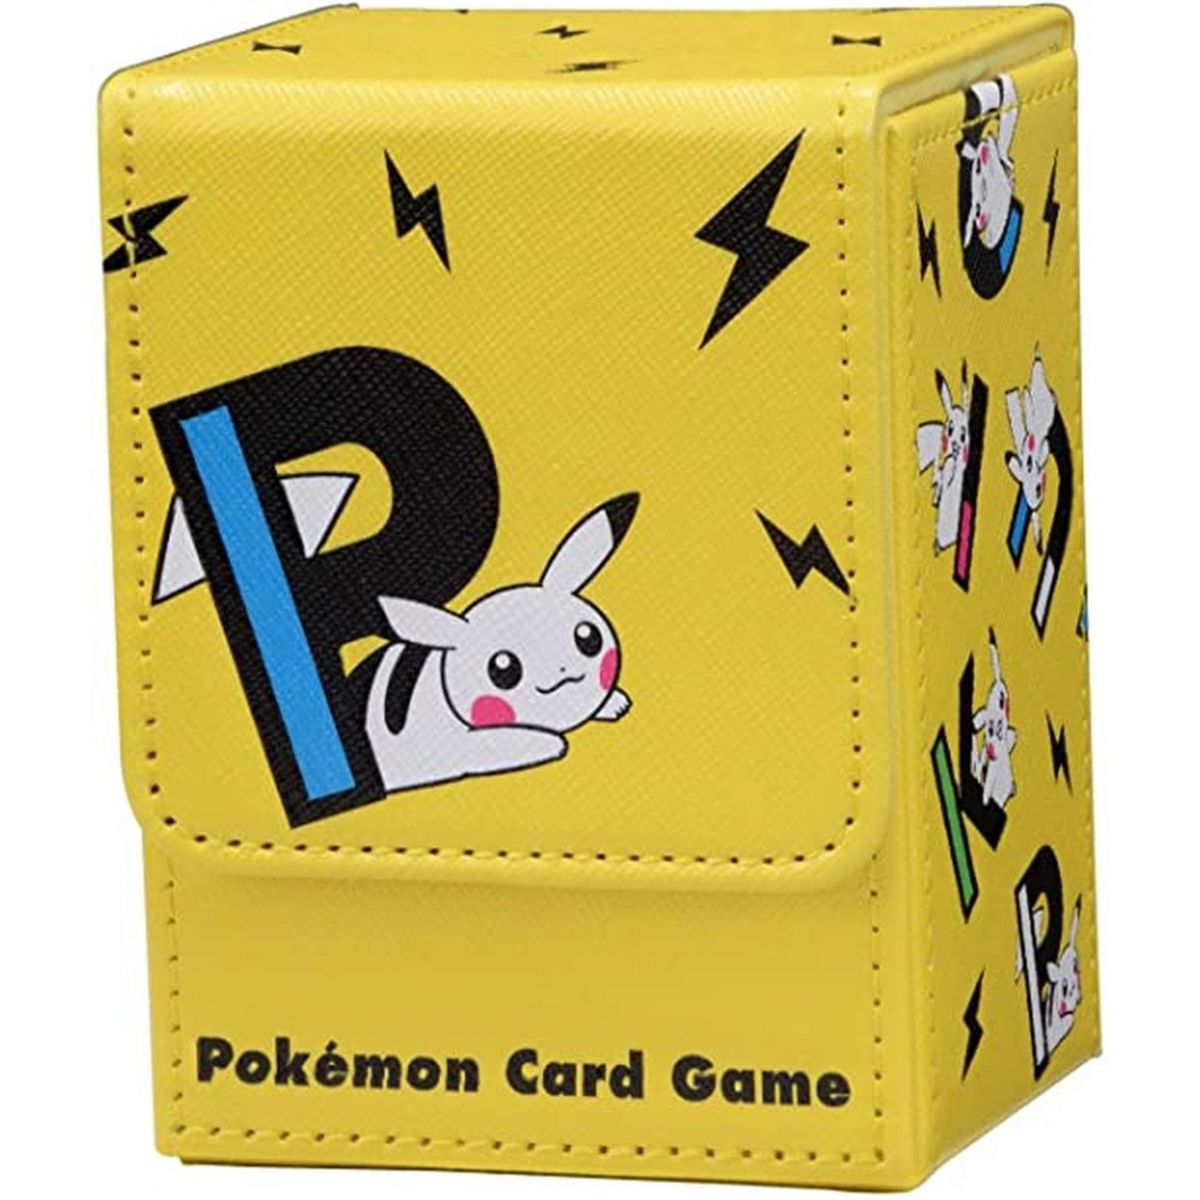 Pokemon - Deck Box - Pikachu Yellow Version - PIKAPIKACHU YE